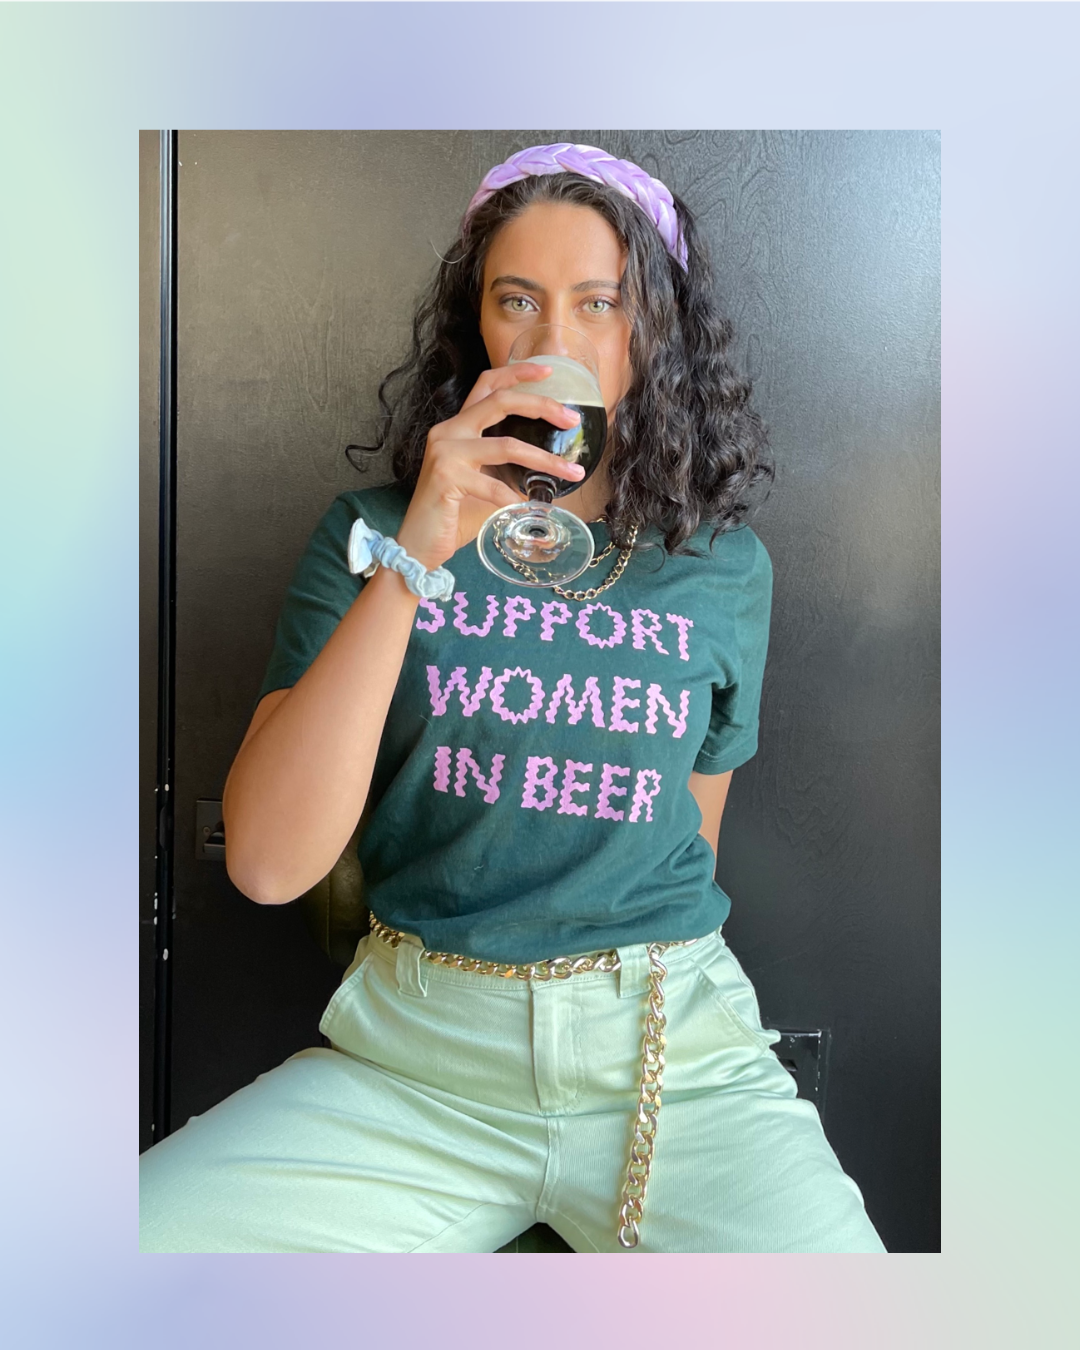 women drinking beer wearing support women in beer shirt